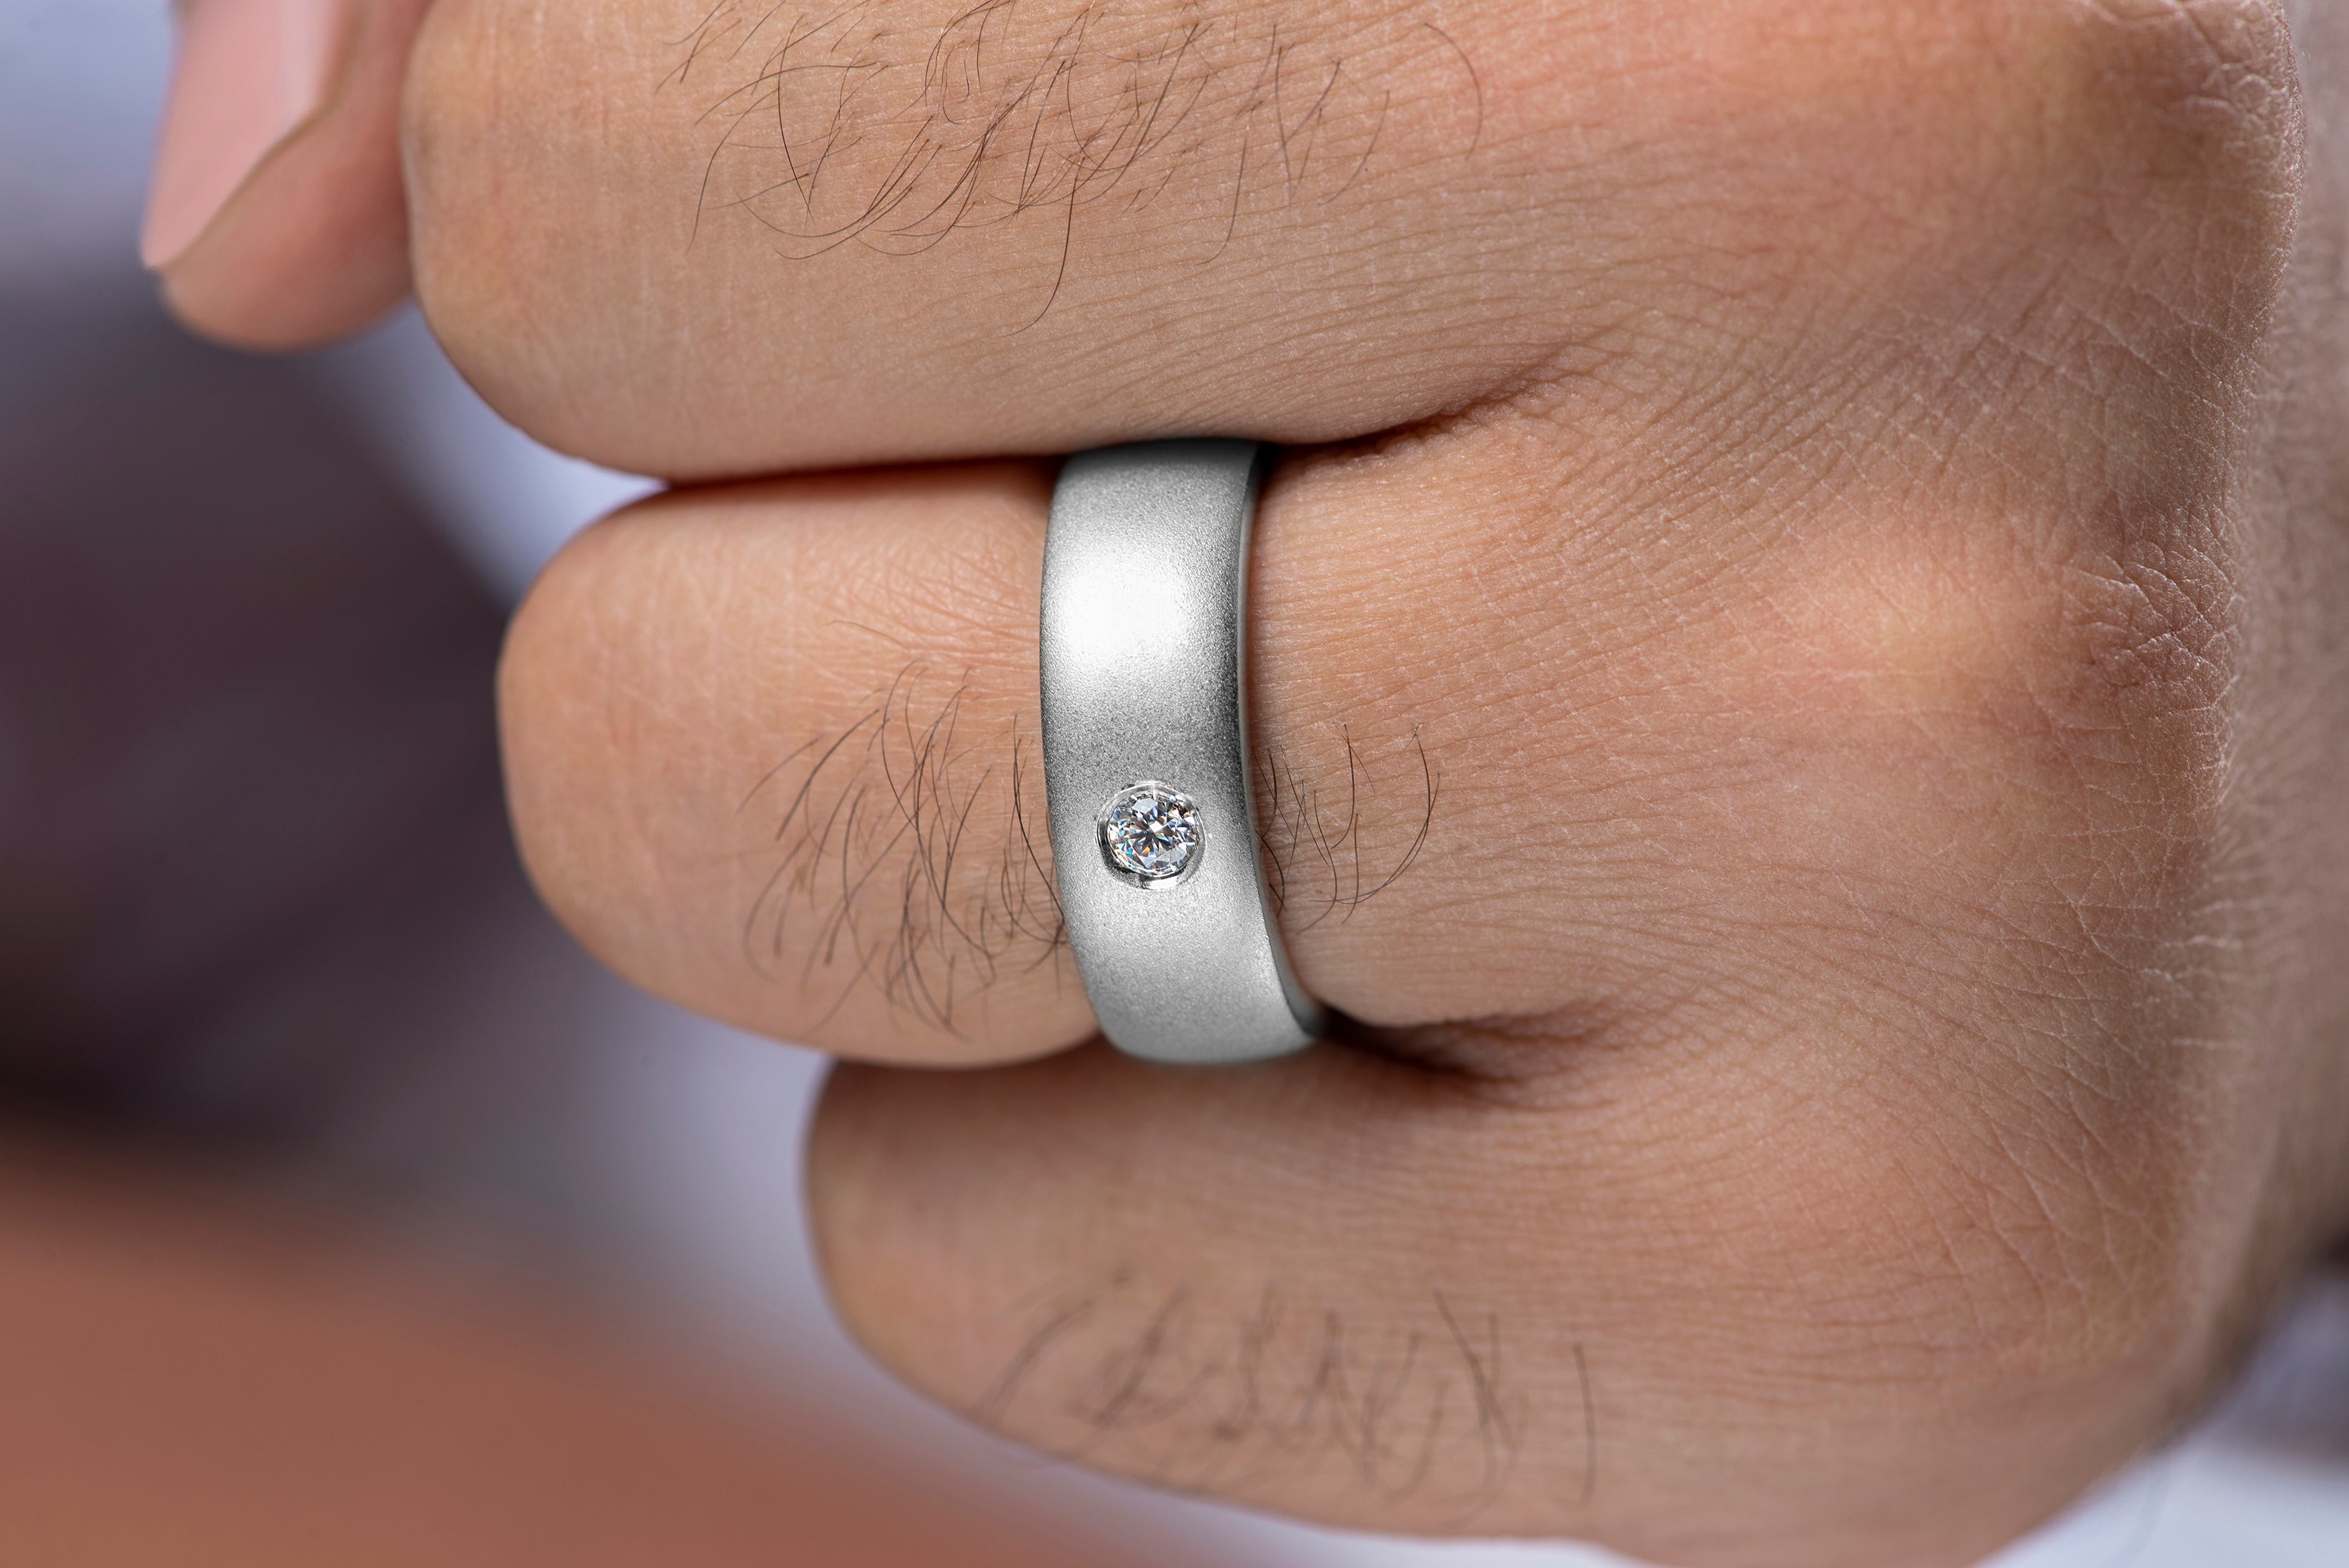 Brushed Finish Round Cut Lab Grown Diamond Men's Wedding Ring